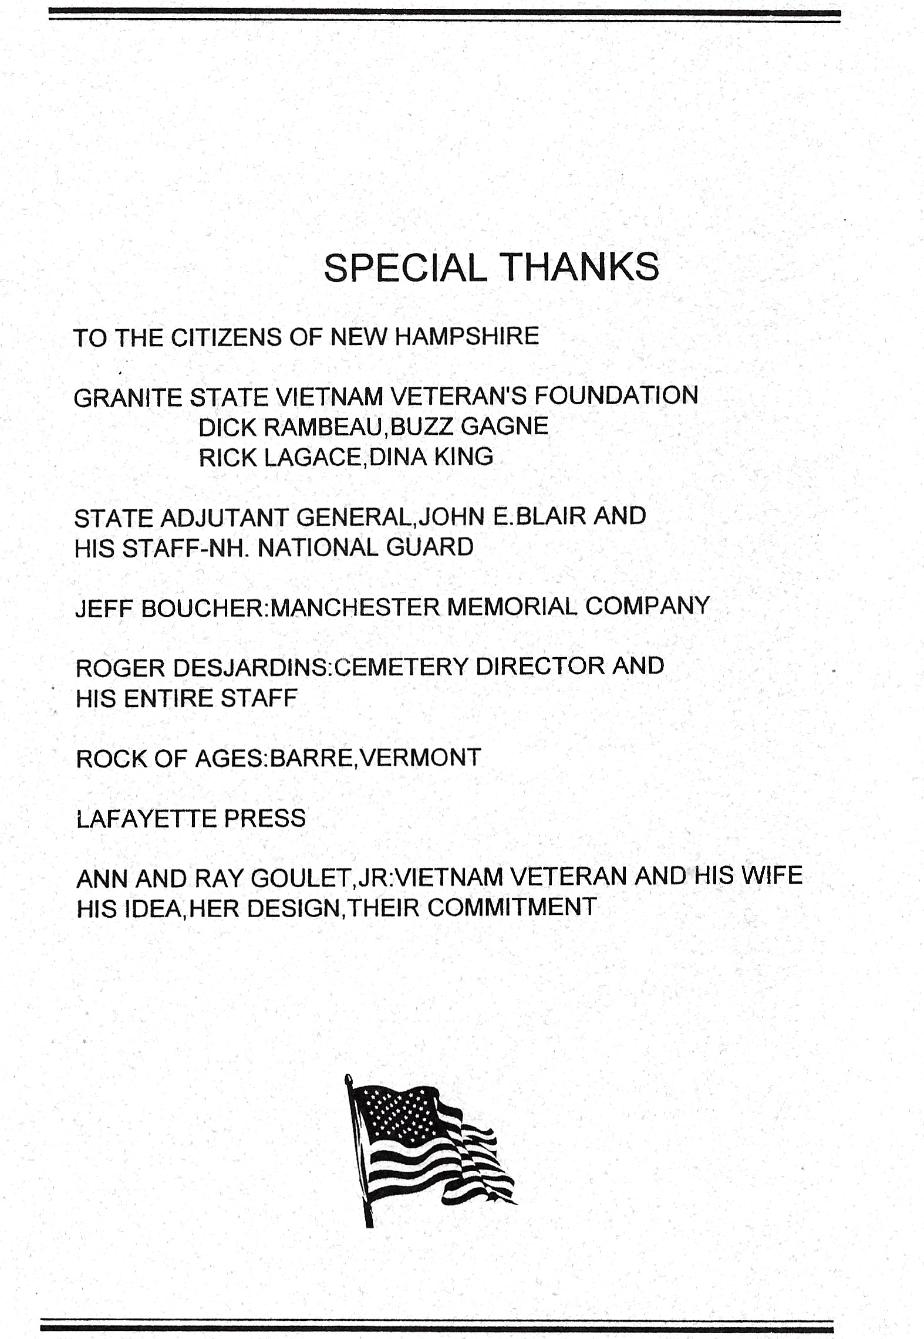 NH State Veterans Cemetery - Vietnam War Memorial - Dedicated May 22 2004